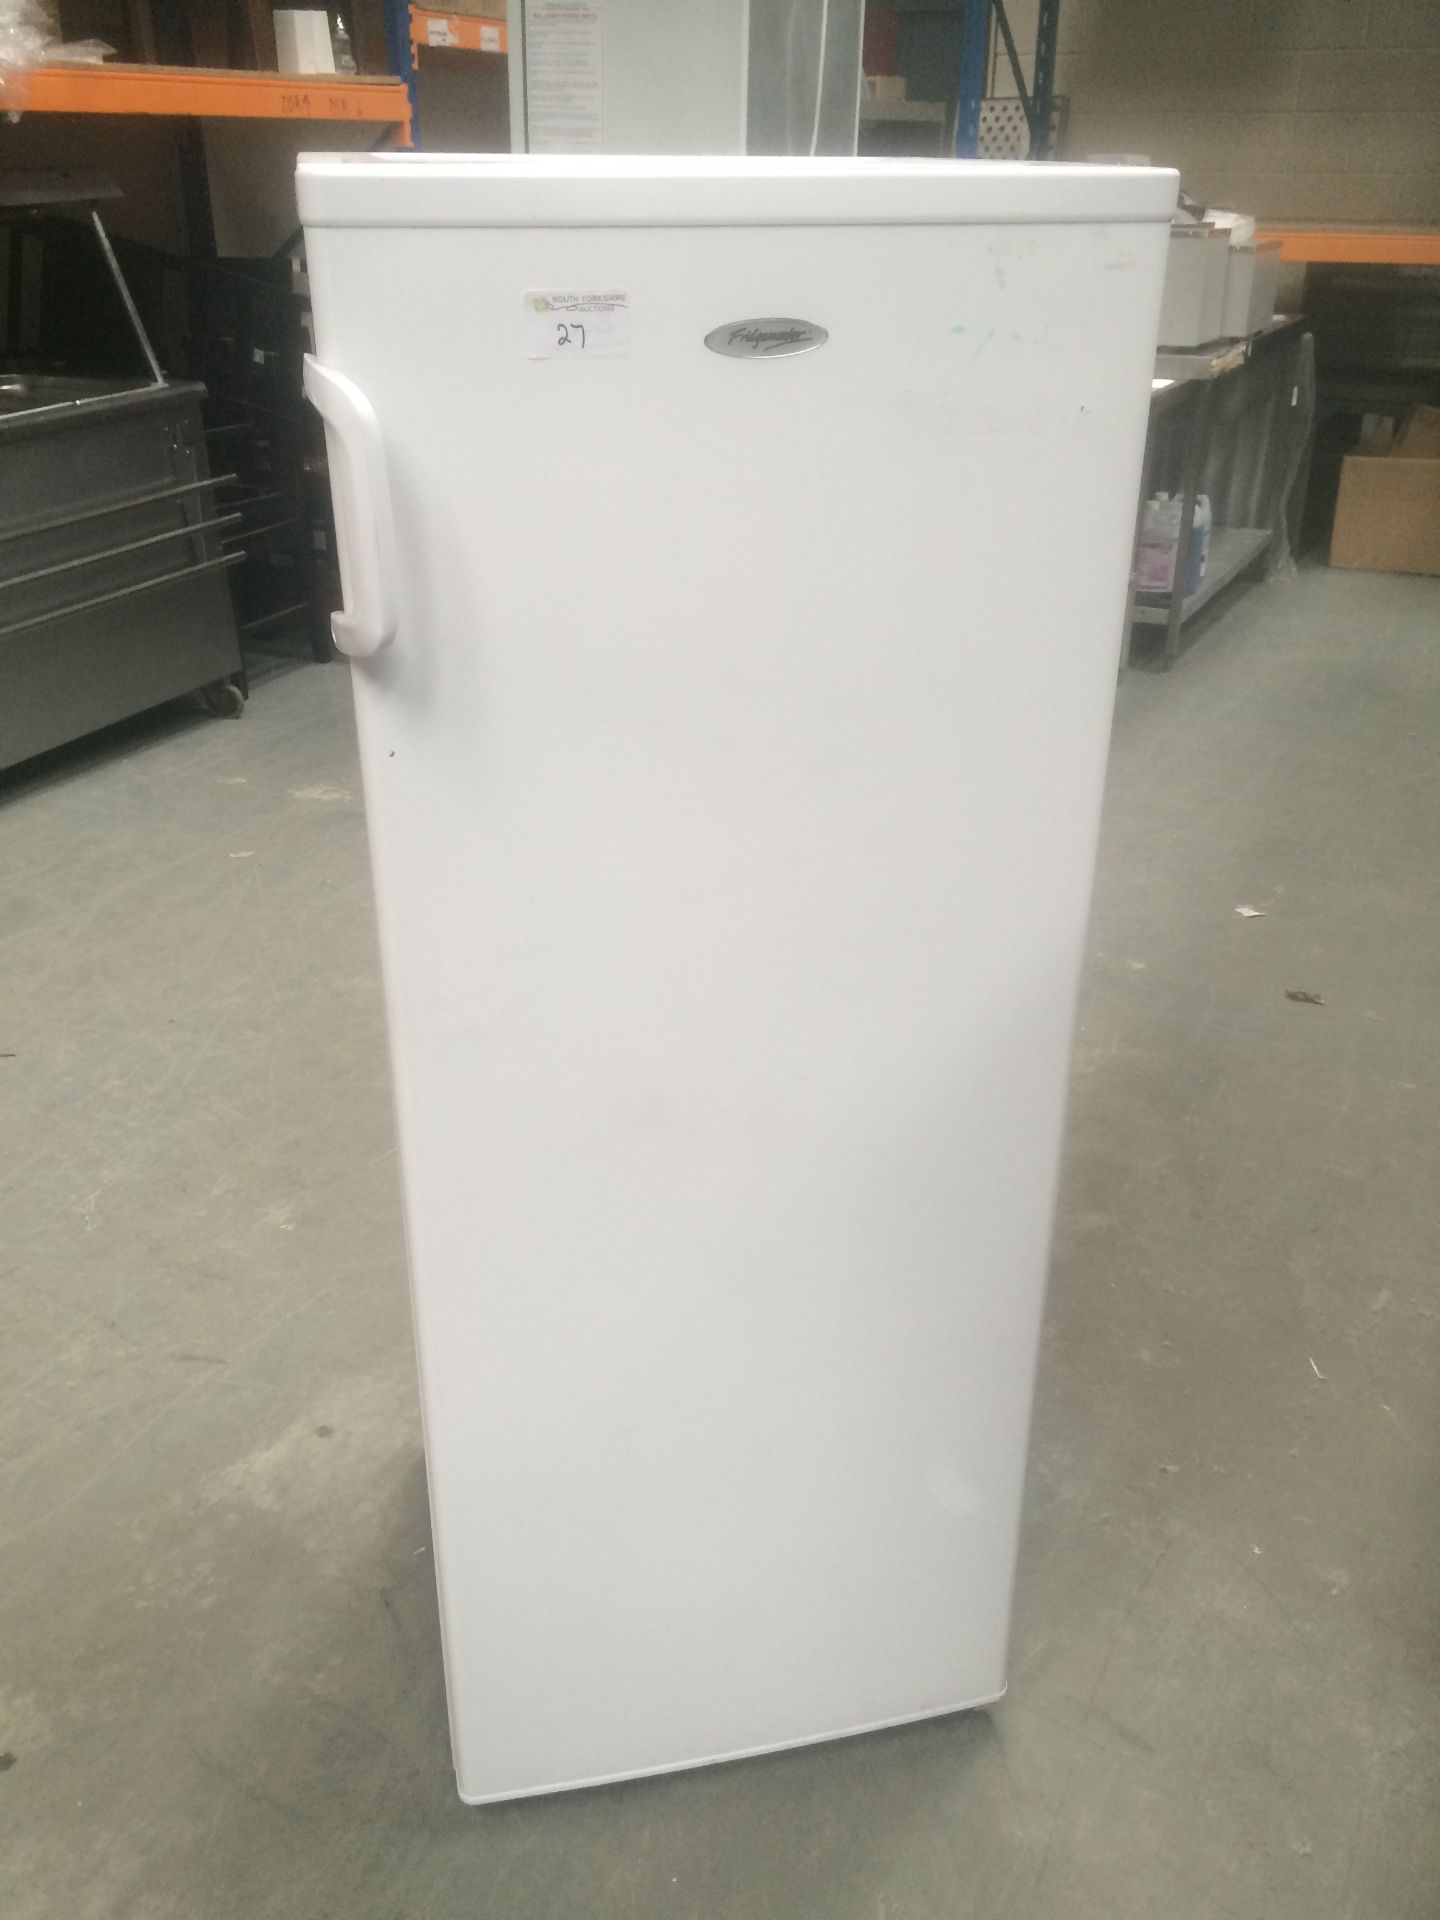 Fridgemaster freezer working 5 compartments 550mmX550mmX1440mm high